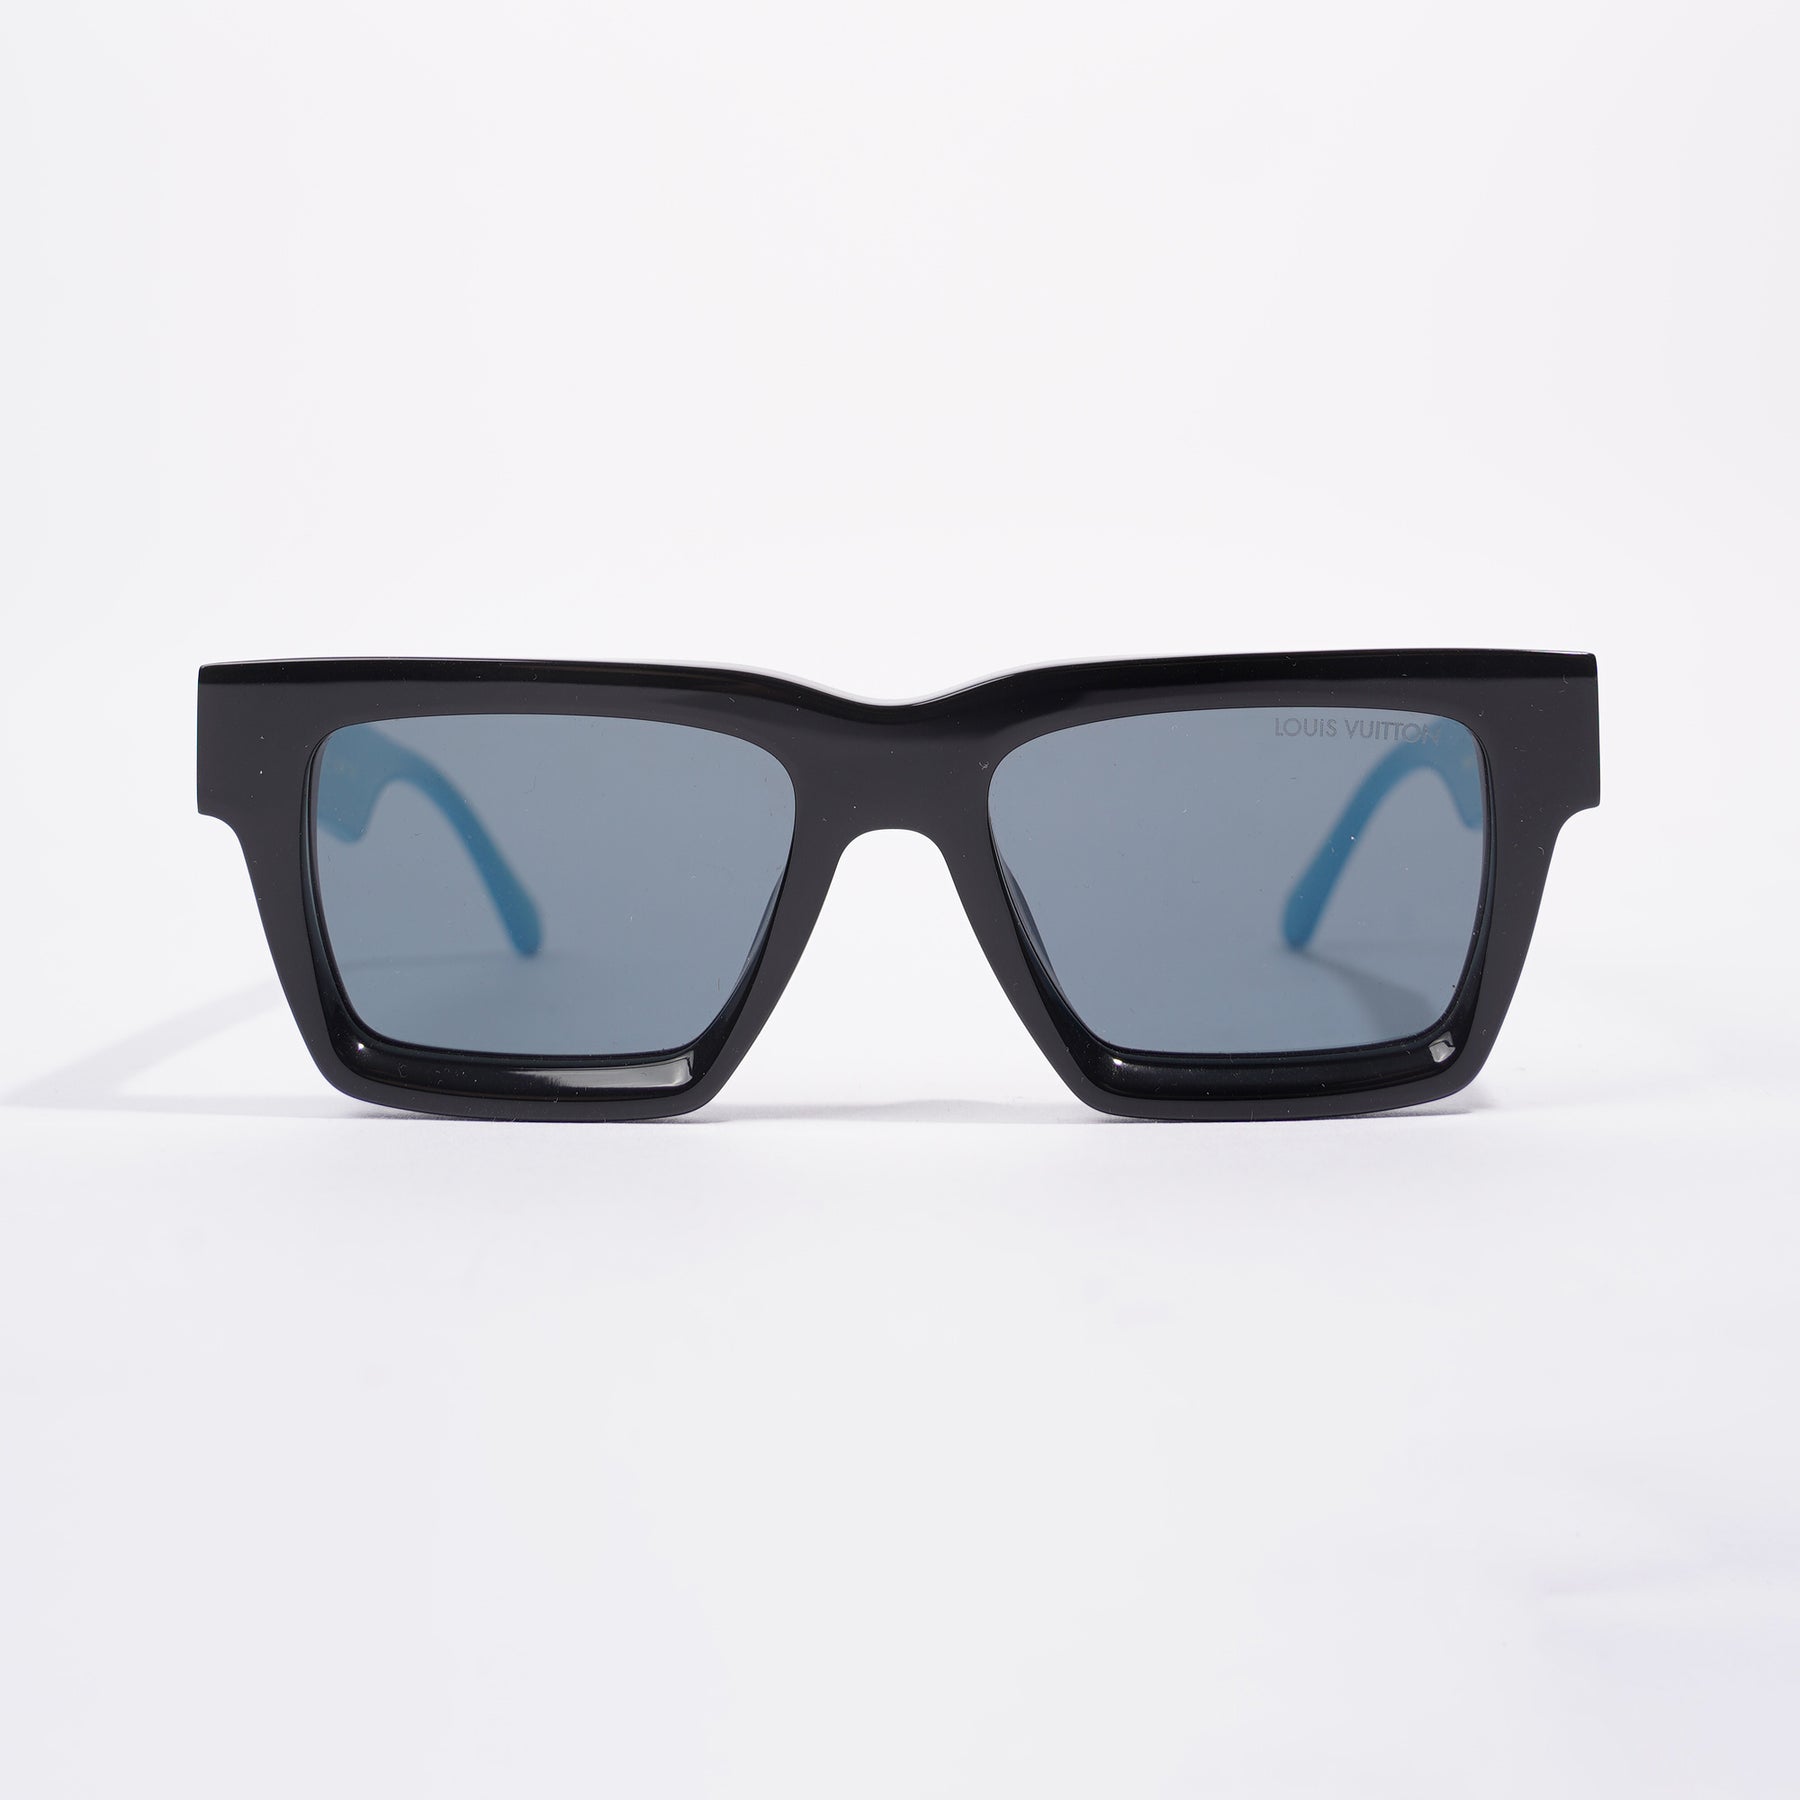 LOUIS VUITTON LV Match Sunglasses Black Acetate. Size E